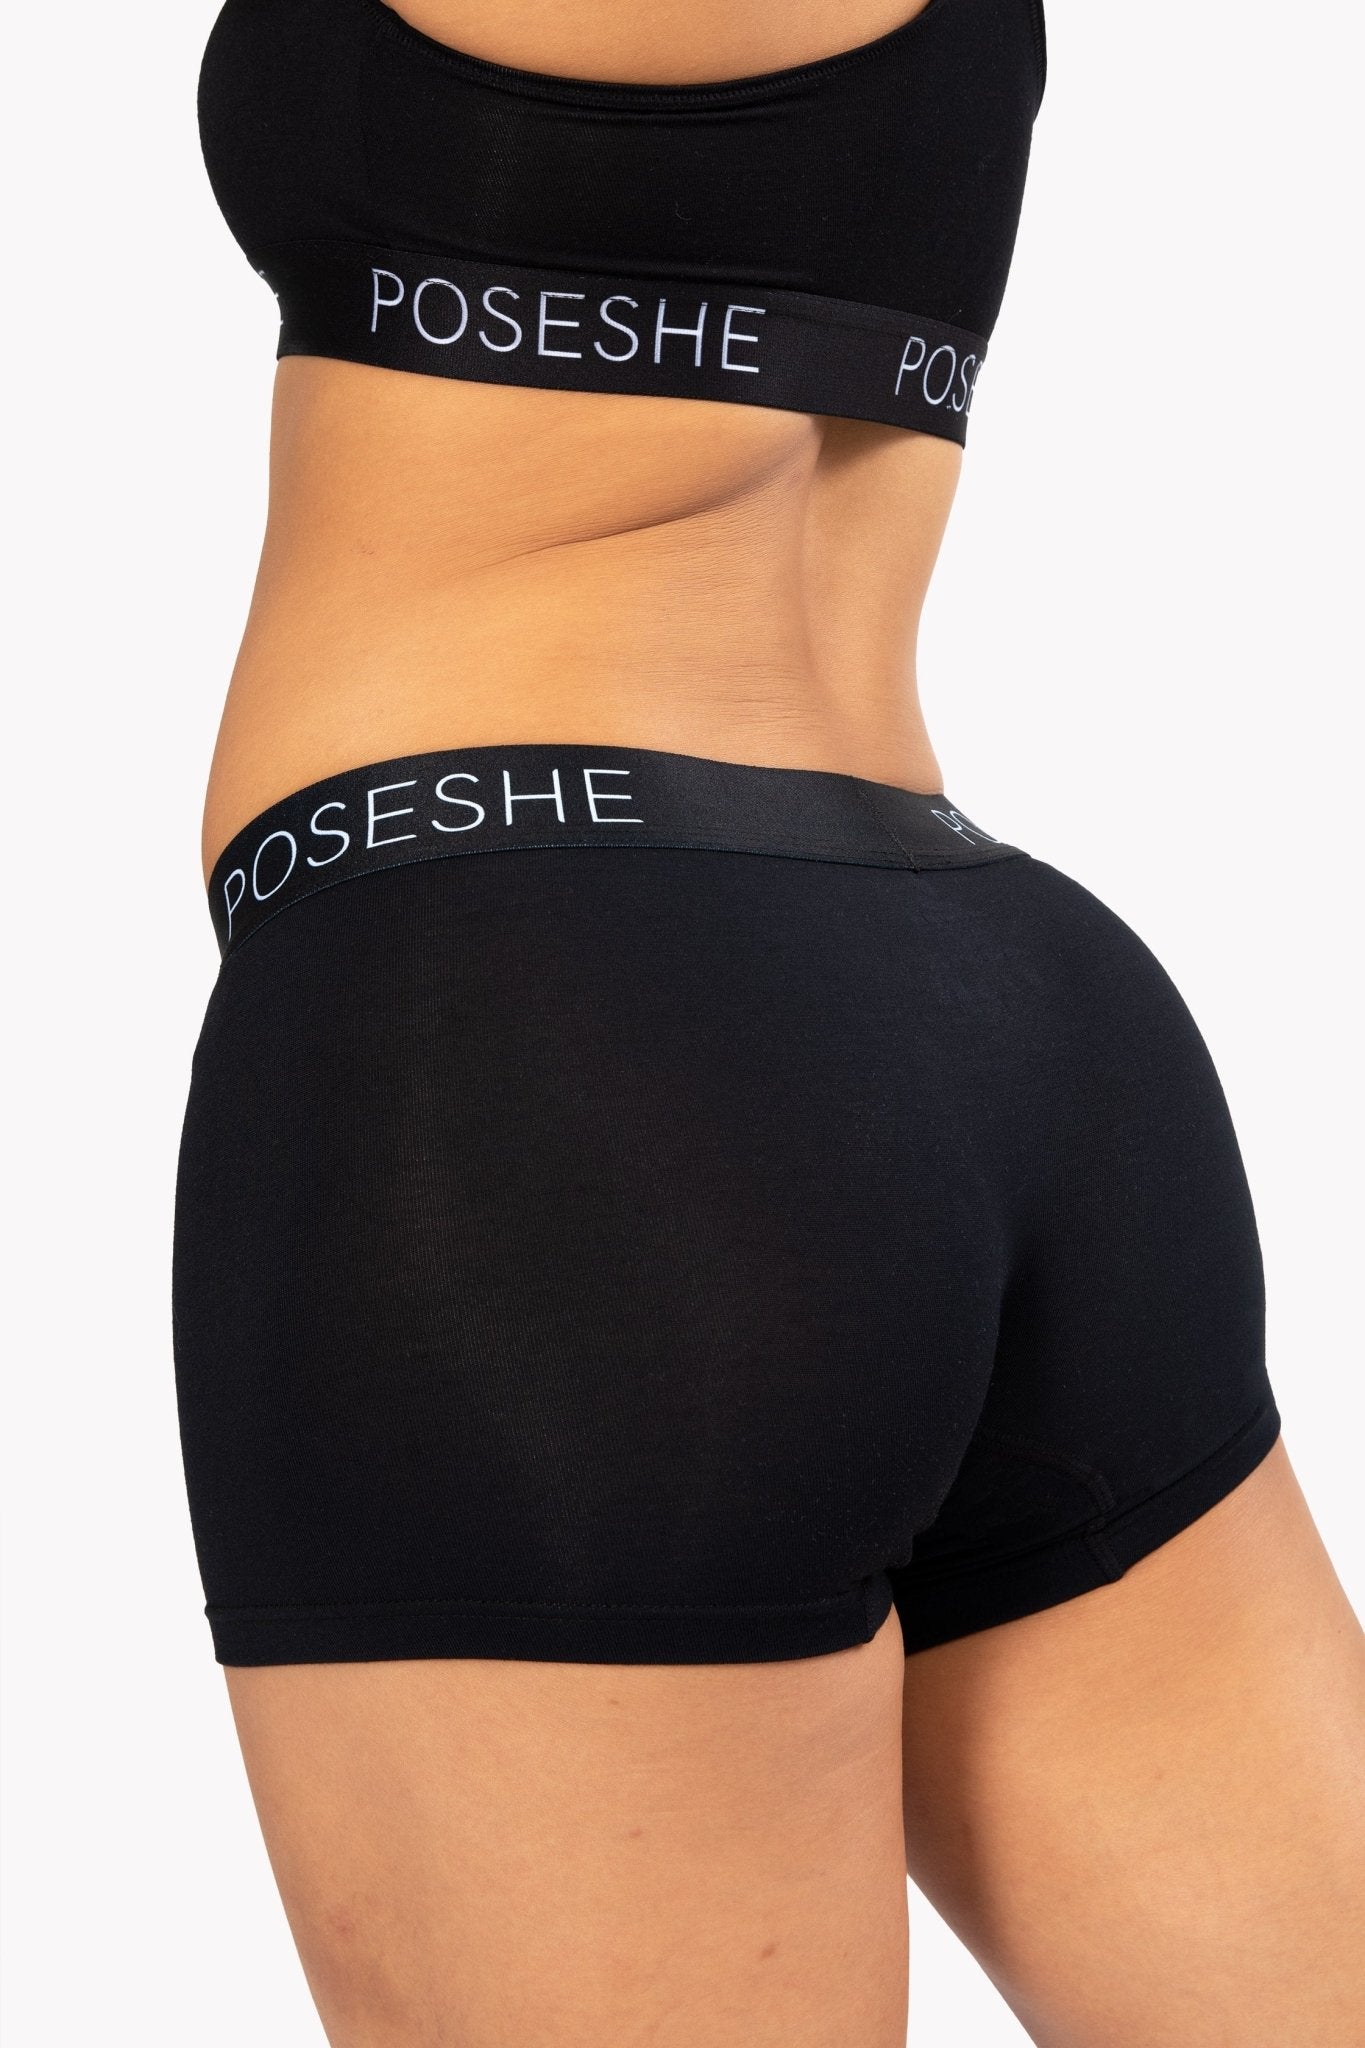 Women's Boxer Briefs 3-Pack - Soft, Breathable Underwear